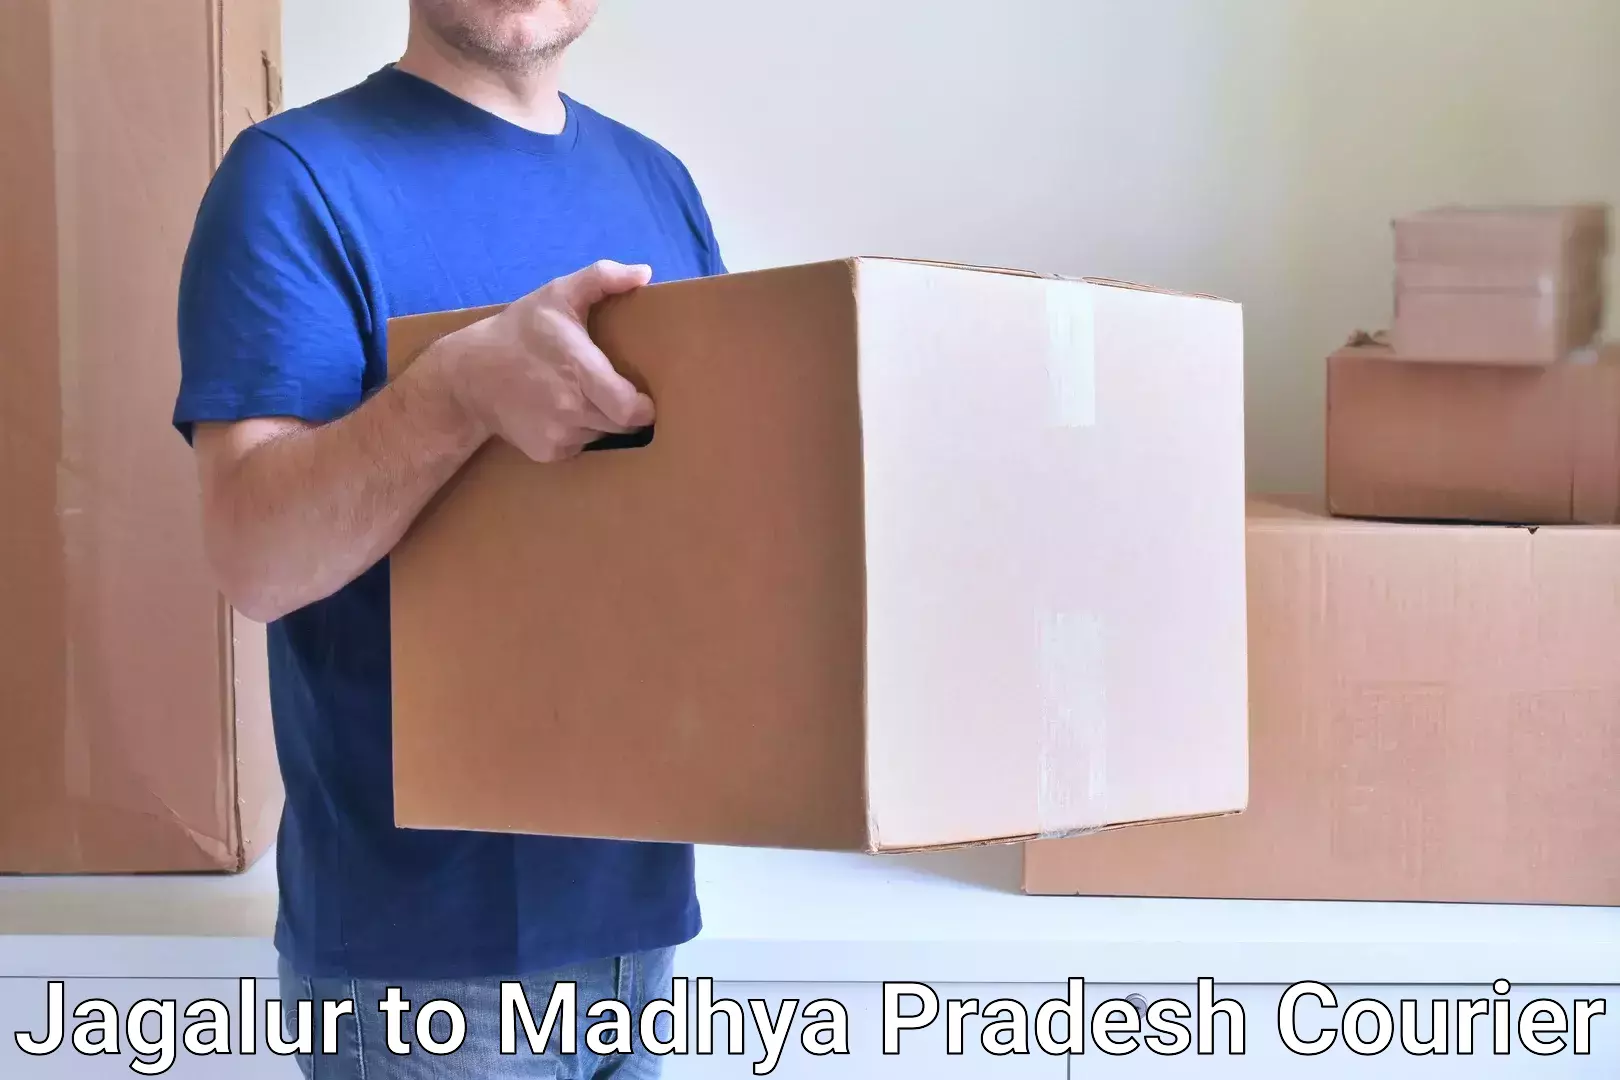 Reliable parcel services Jagalur to Tendukheda